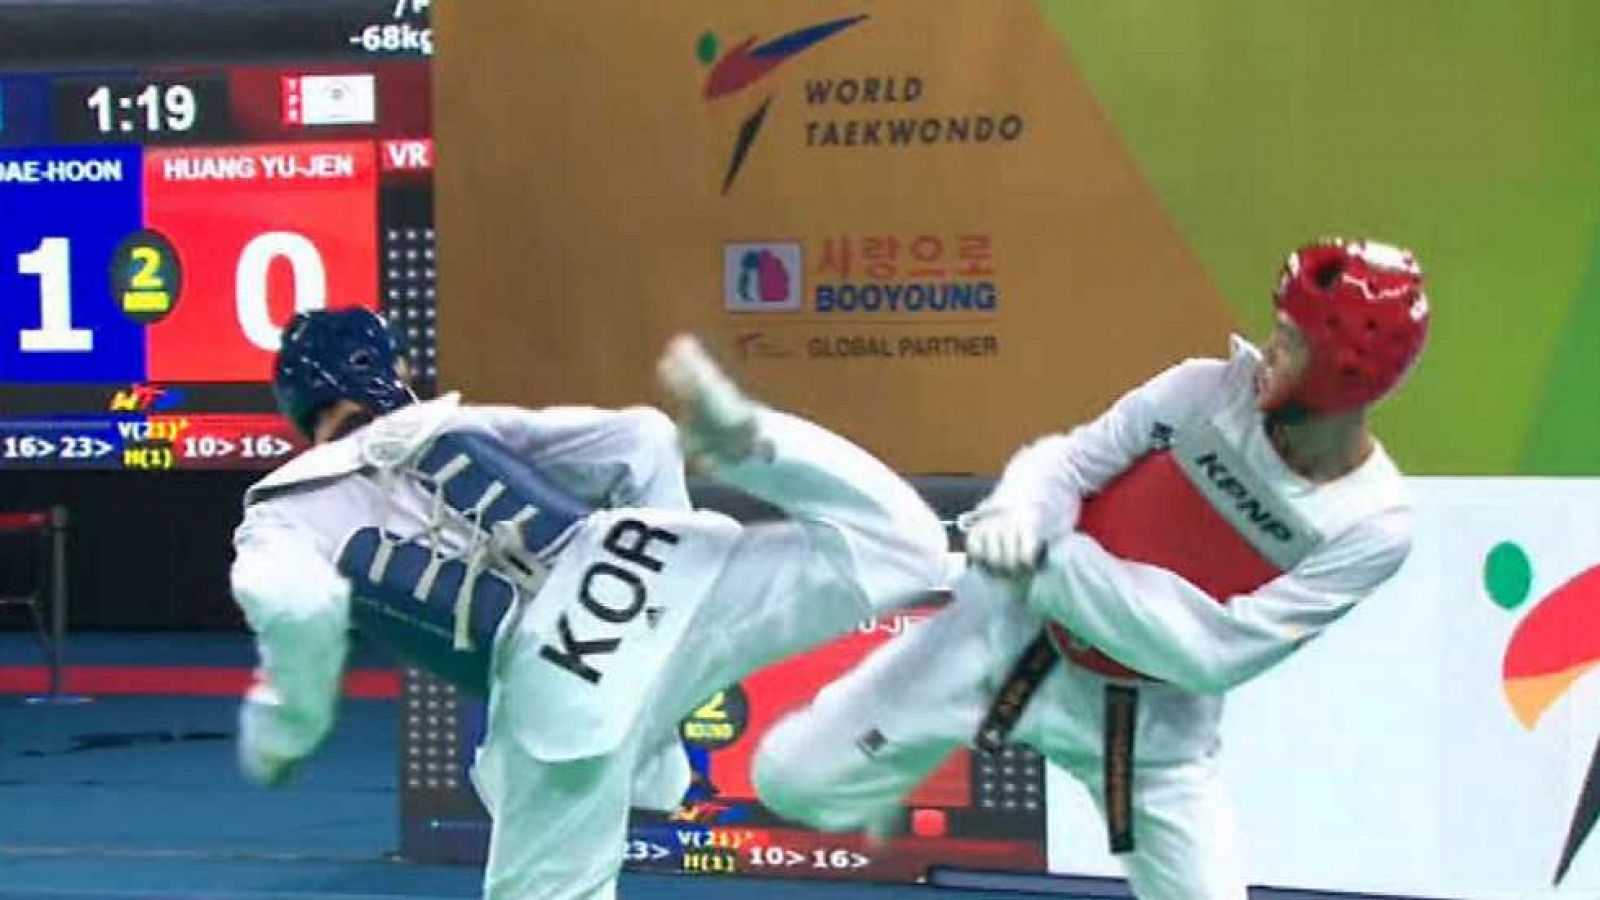 Taekwondo - Campeonato del Mundo. Semifinales y Finales -67kgs. Femeninos y -68kgs. Masculinos